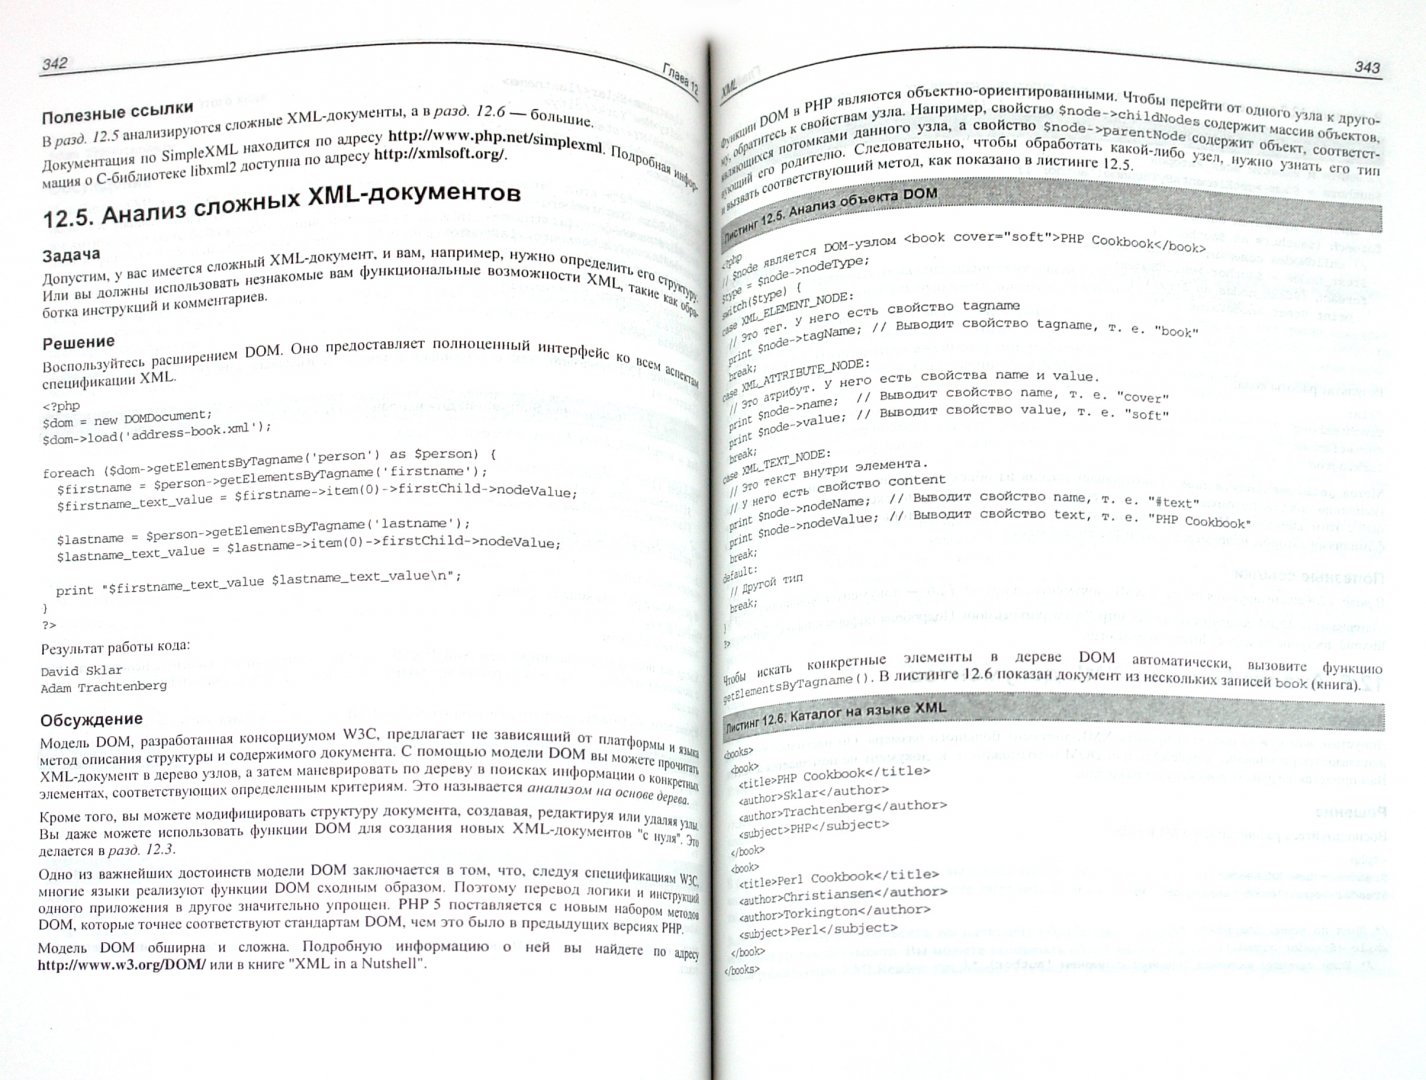 Иллюстрация 1 из 5 для PHP. Рецепты программирования - Скляр, Трахтенберг | Лабиринт - книги. Источник: Лабиринт